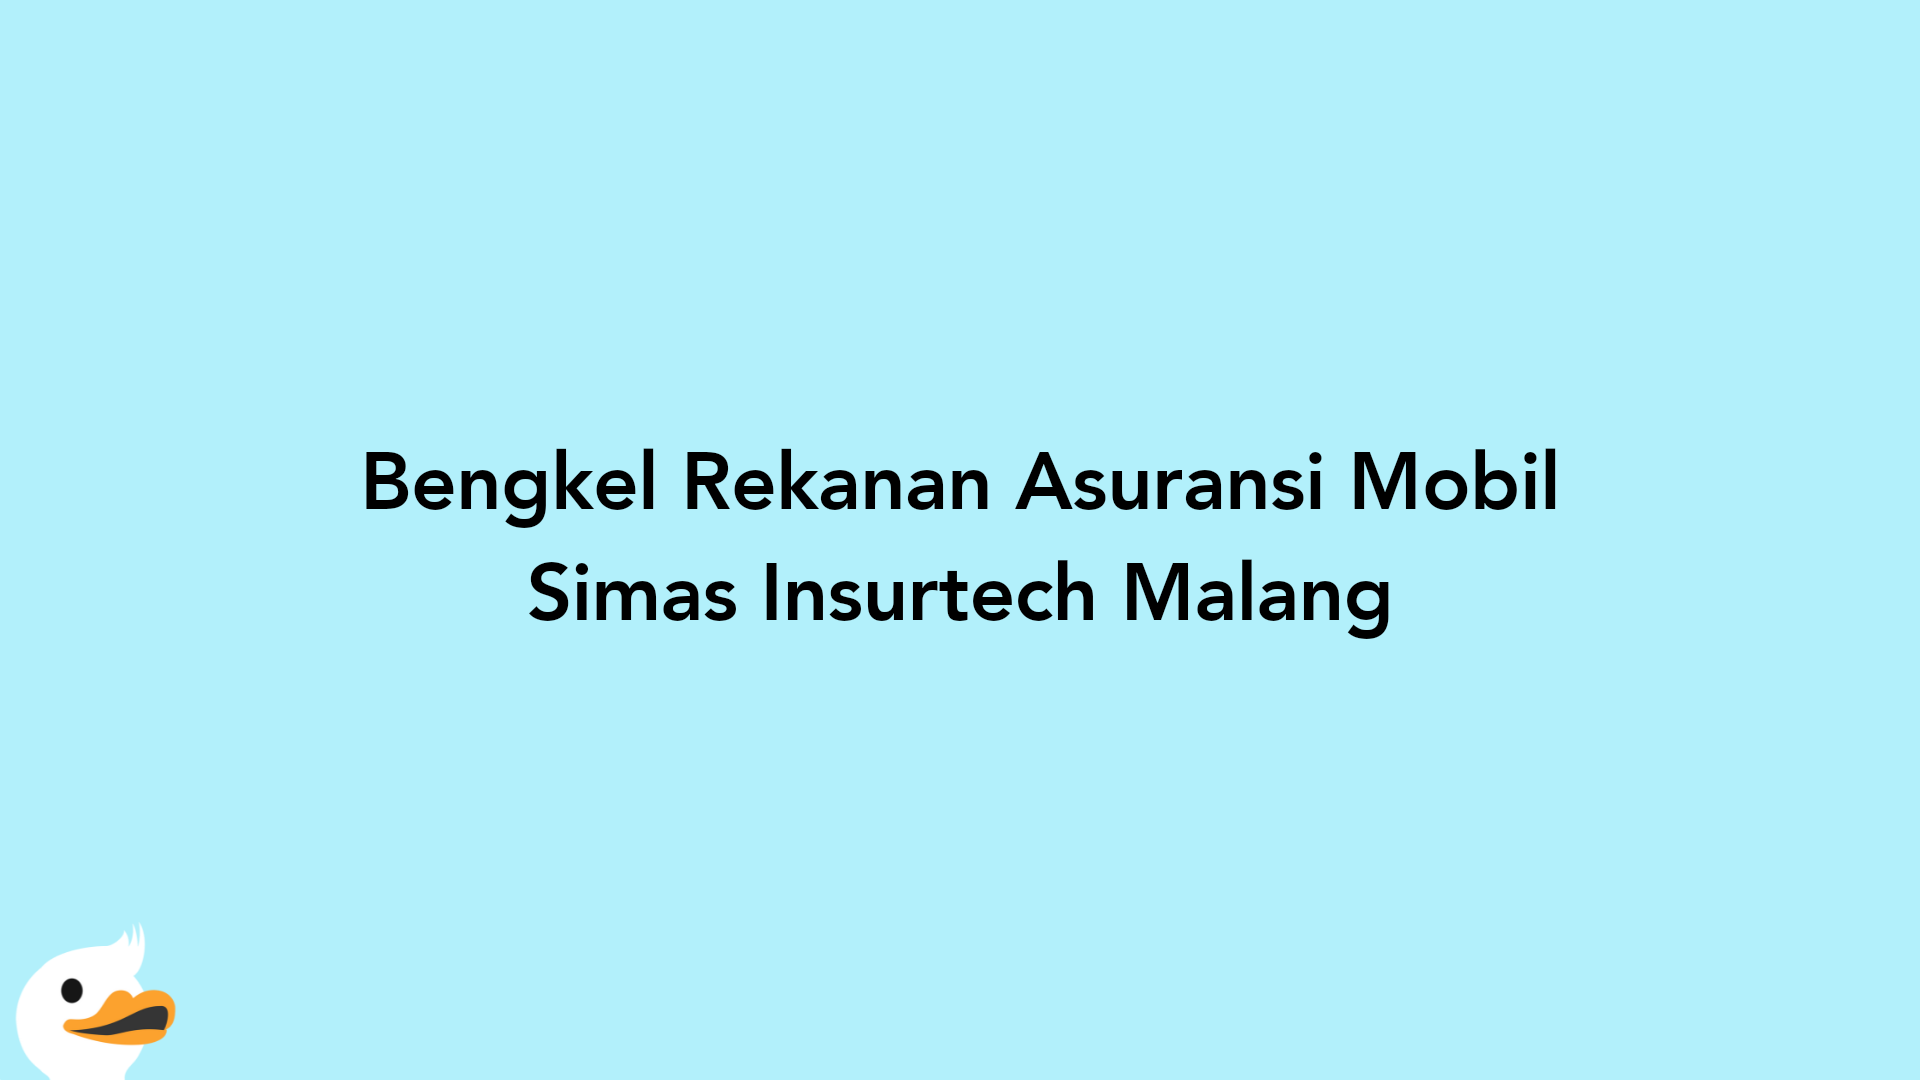 Bengkel Rekanan Asuransi Mobil Simas Insurtech Malang